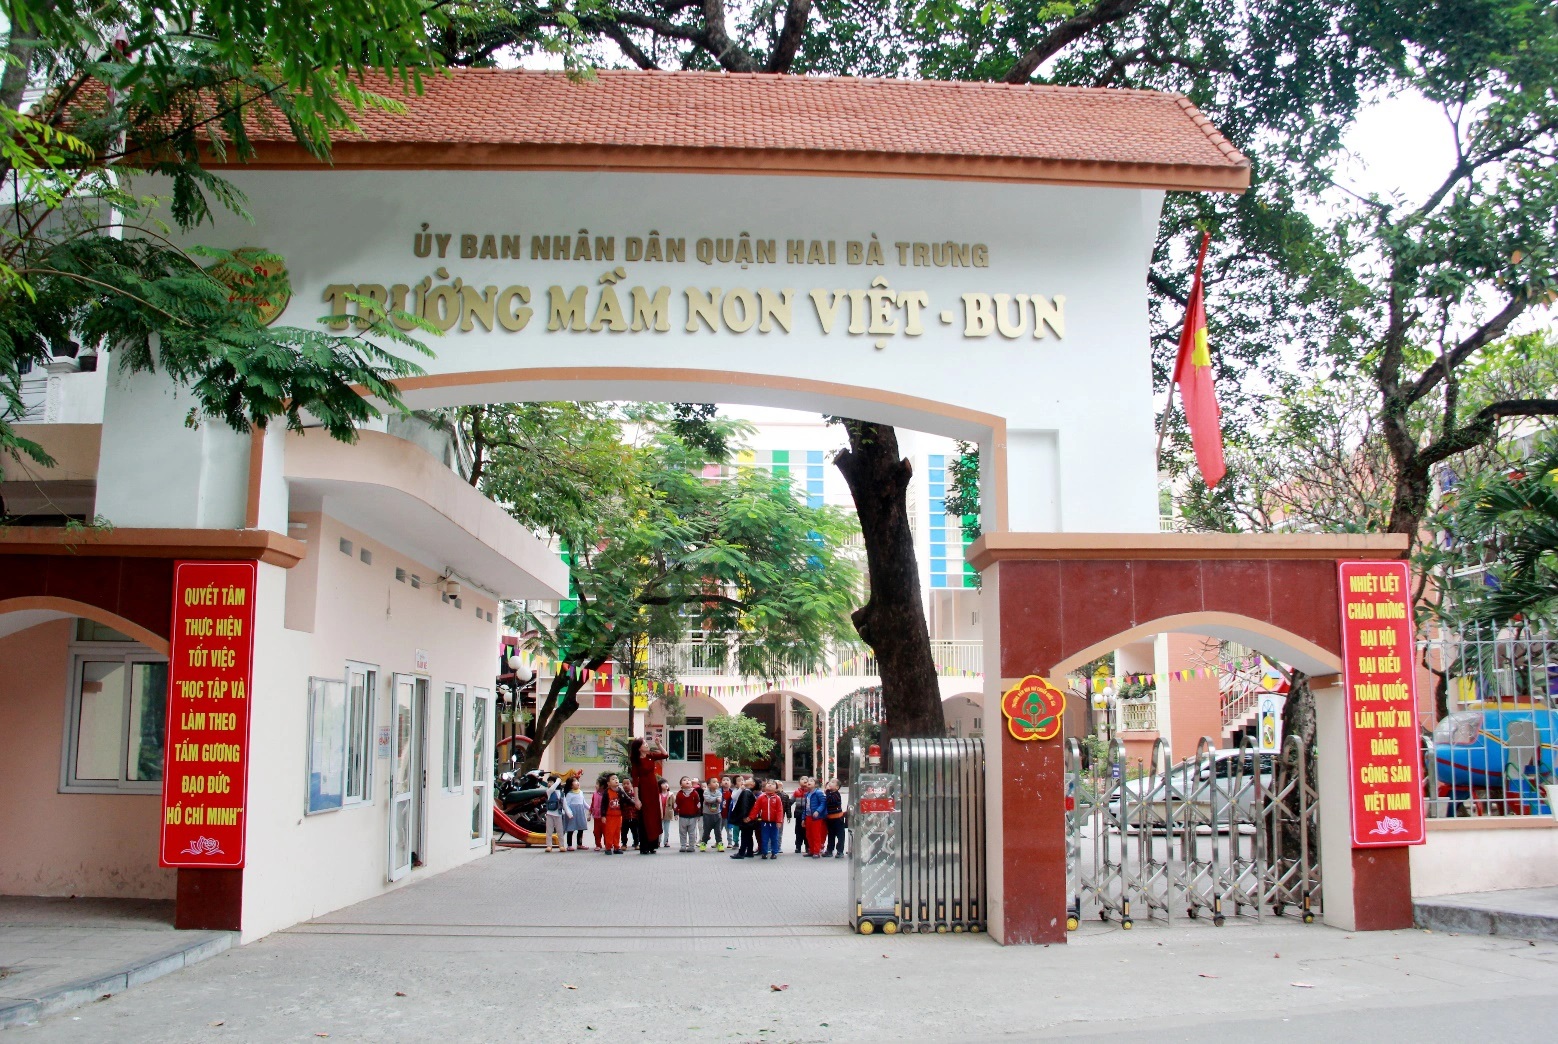 Các trường mầm non CÔNG LẬP to đẹp, rộng rãi ở Hà Nội, phụ huynh có thể tham khảo - Ảnh 16.